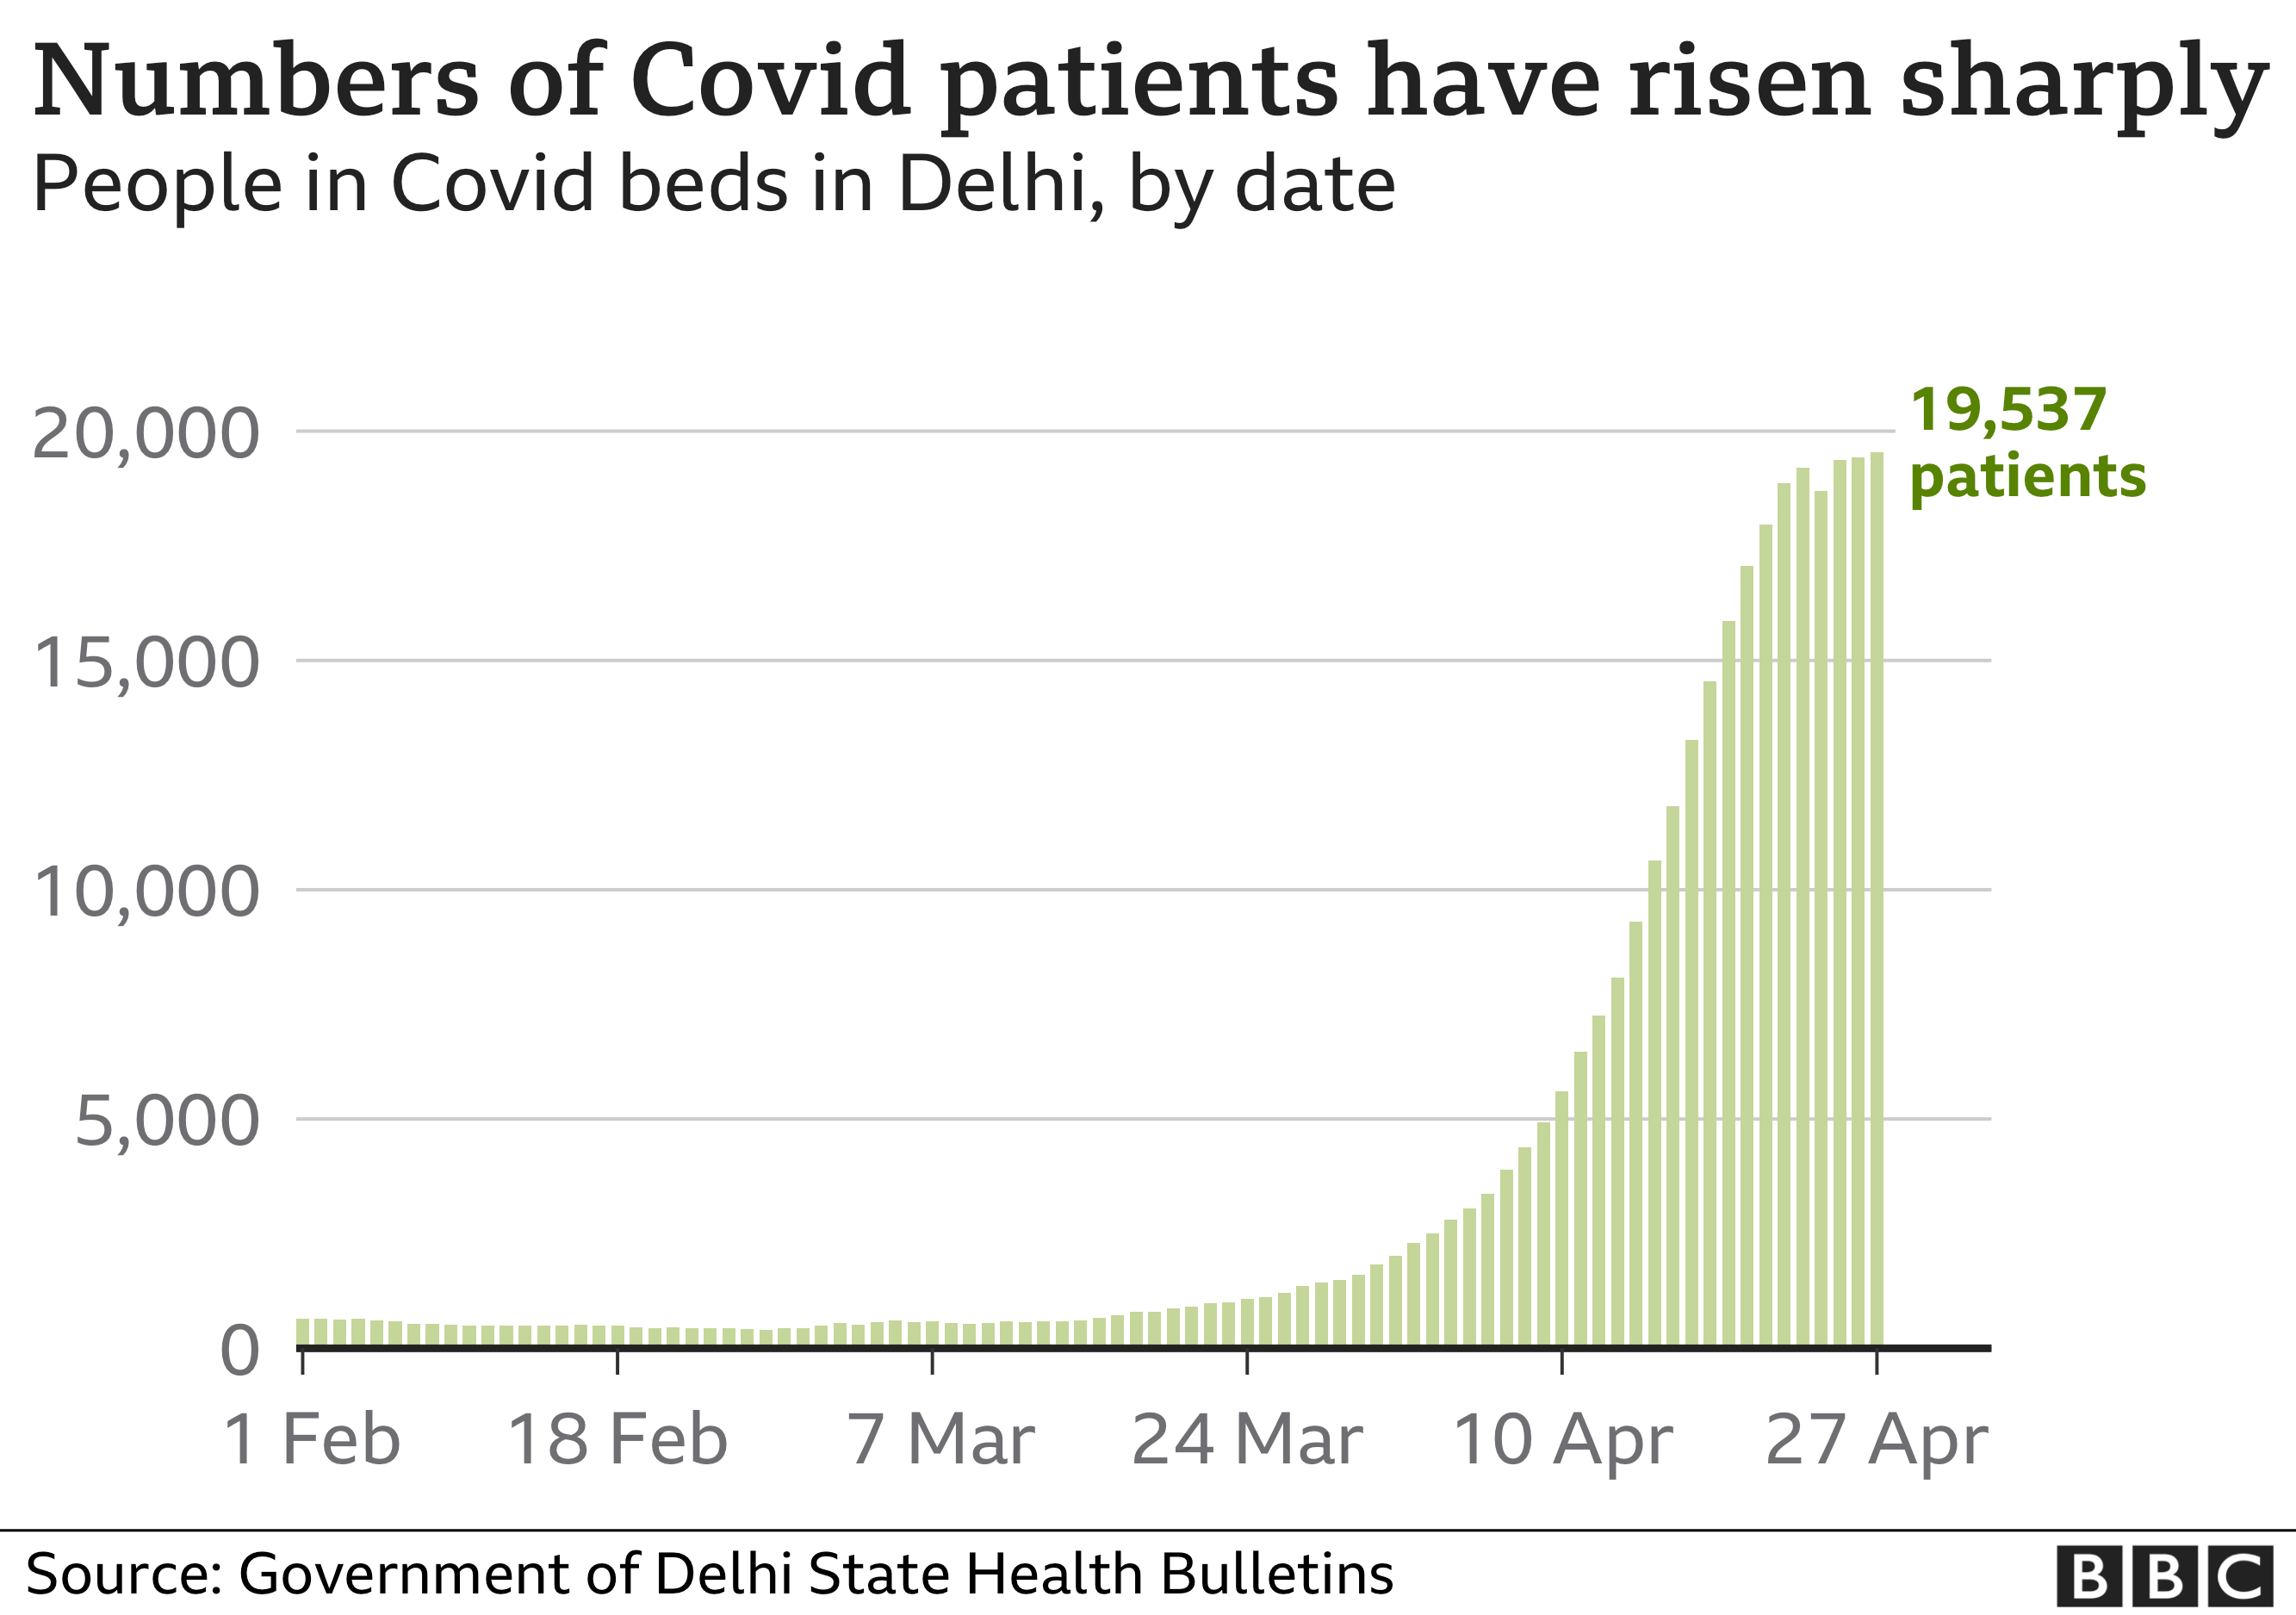 Диаграмма, показывающая, как количество пациентов в больнице с Covid-19 в Дели быстро выросло почти до 20 тысяч.